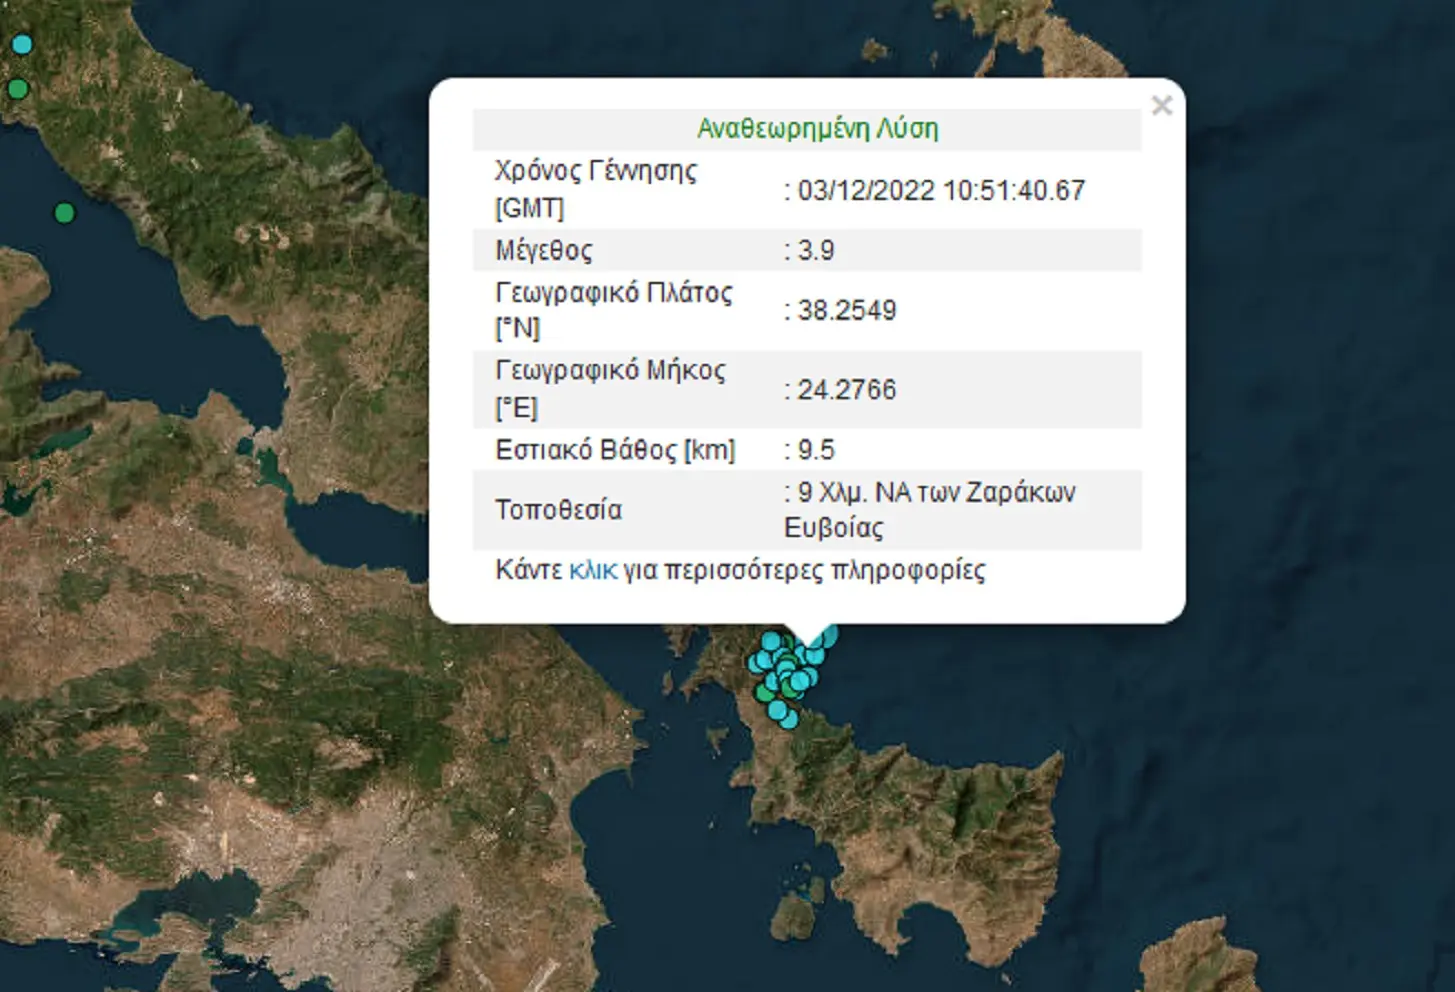 Δύο σεισμοί 3,9 Ρίχτερ μέσα σε λίγη ώρα στην Εύβοια